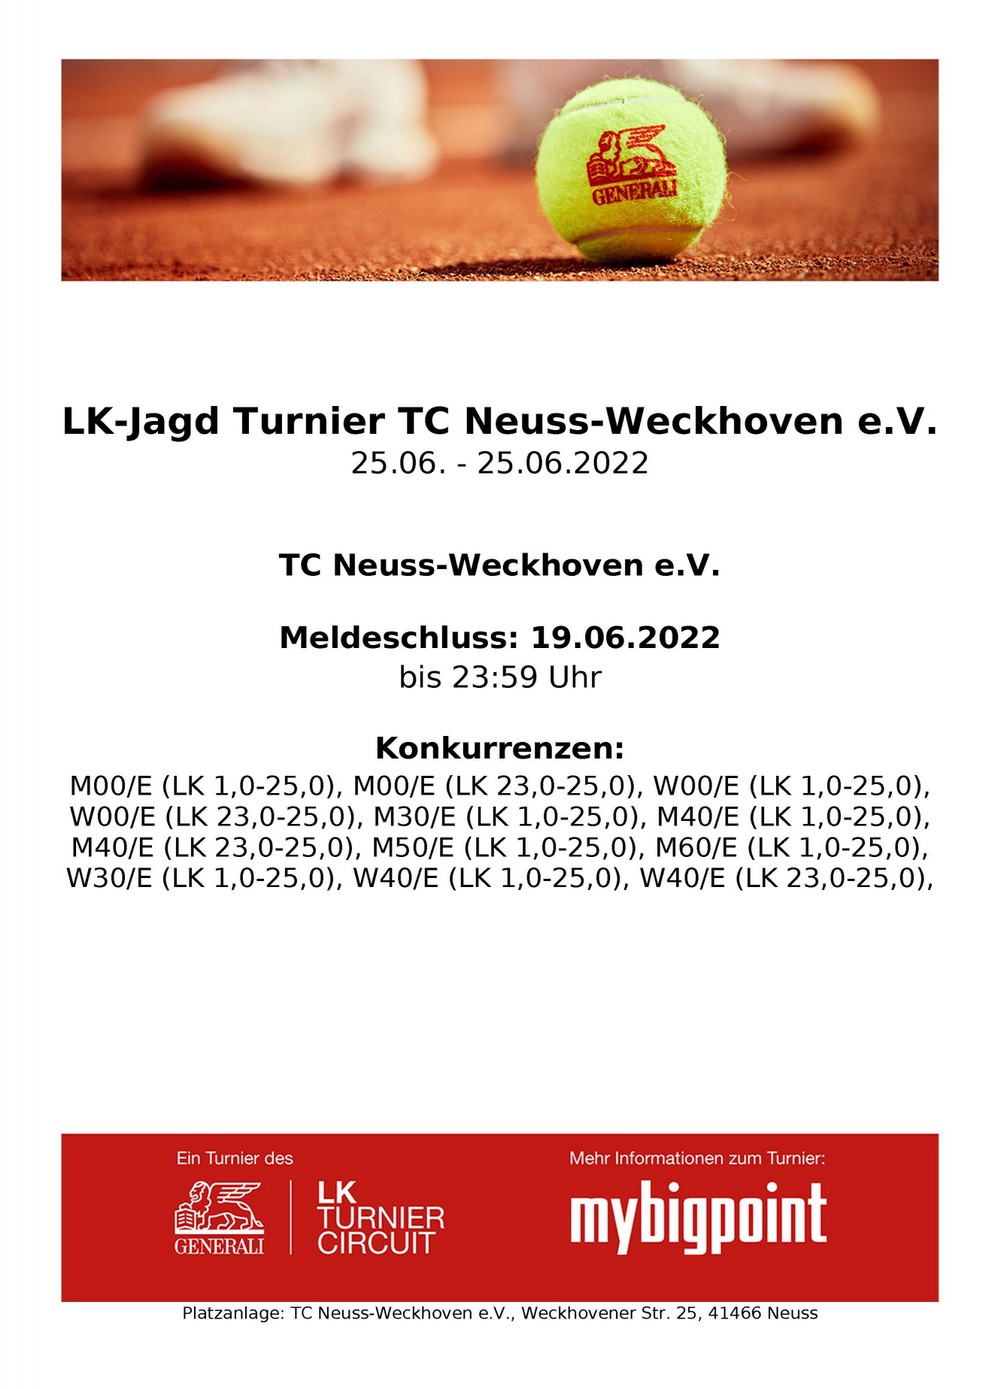 LK-Jagd-Turnier im TC Neuss-Weckhoven e.V. 